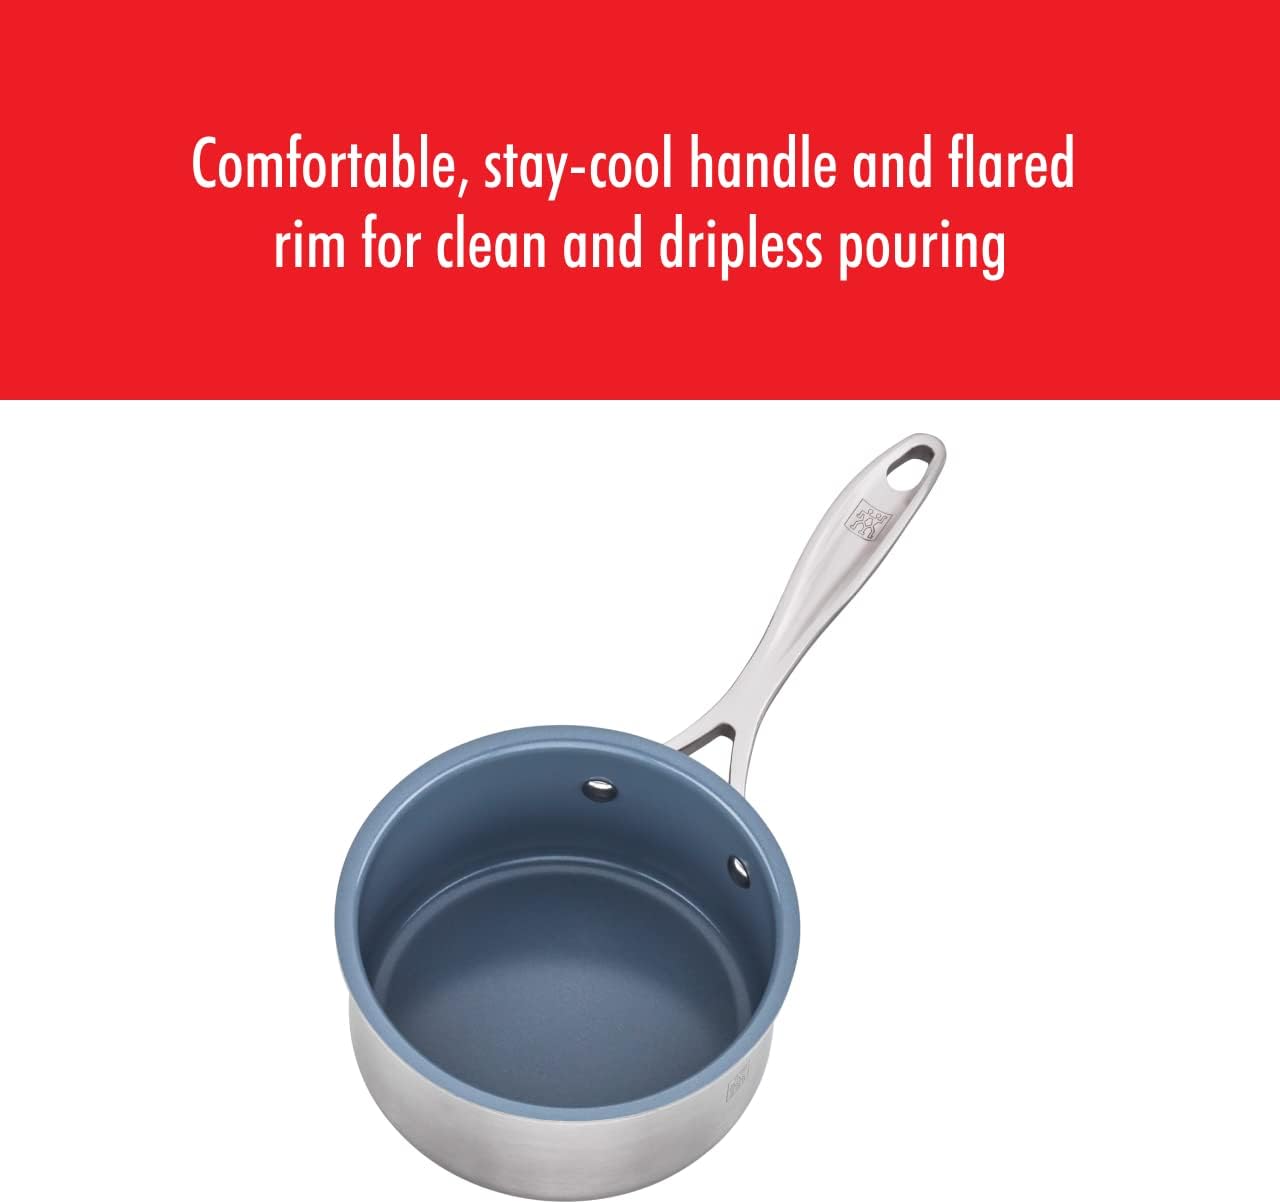 Buy ZWILLING Spirit Ceramic Nonstick Frying pan set